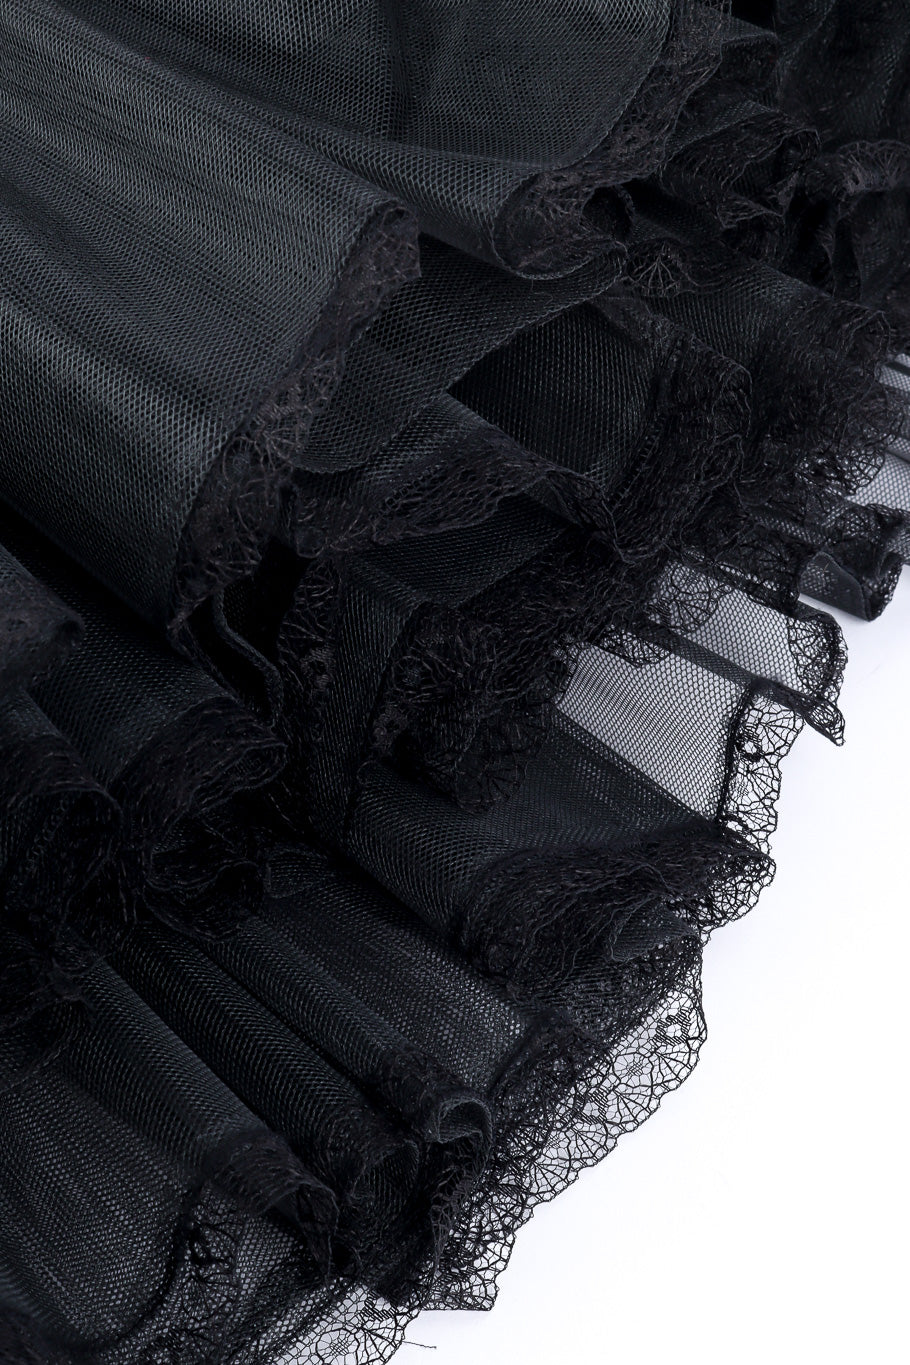 Petticoat skirt by Morgane Le Fay lace hem close @recessla